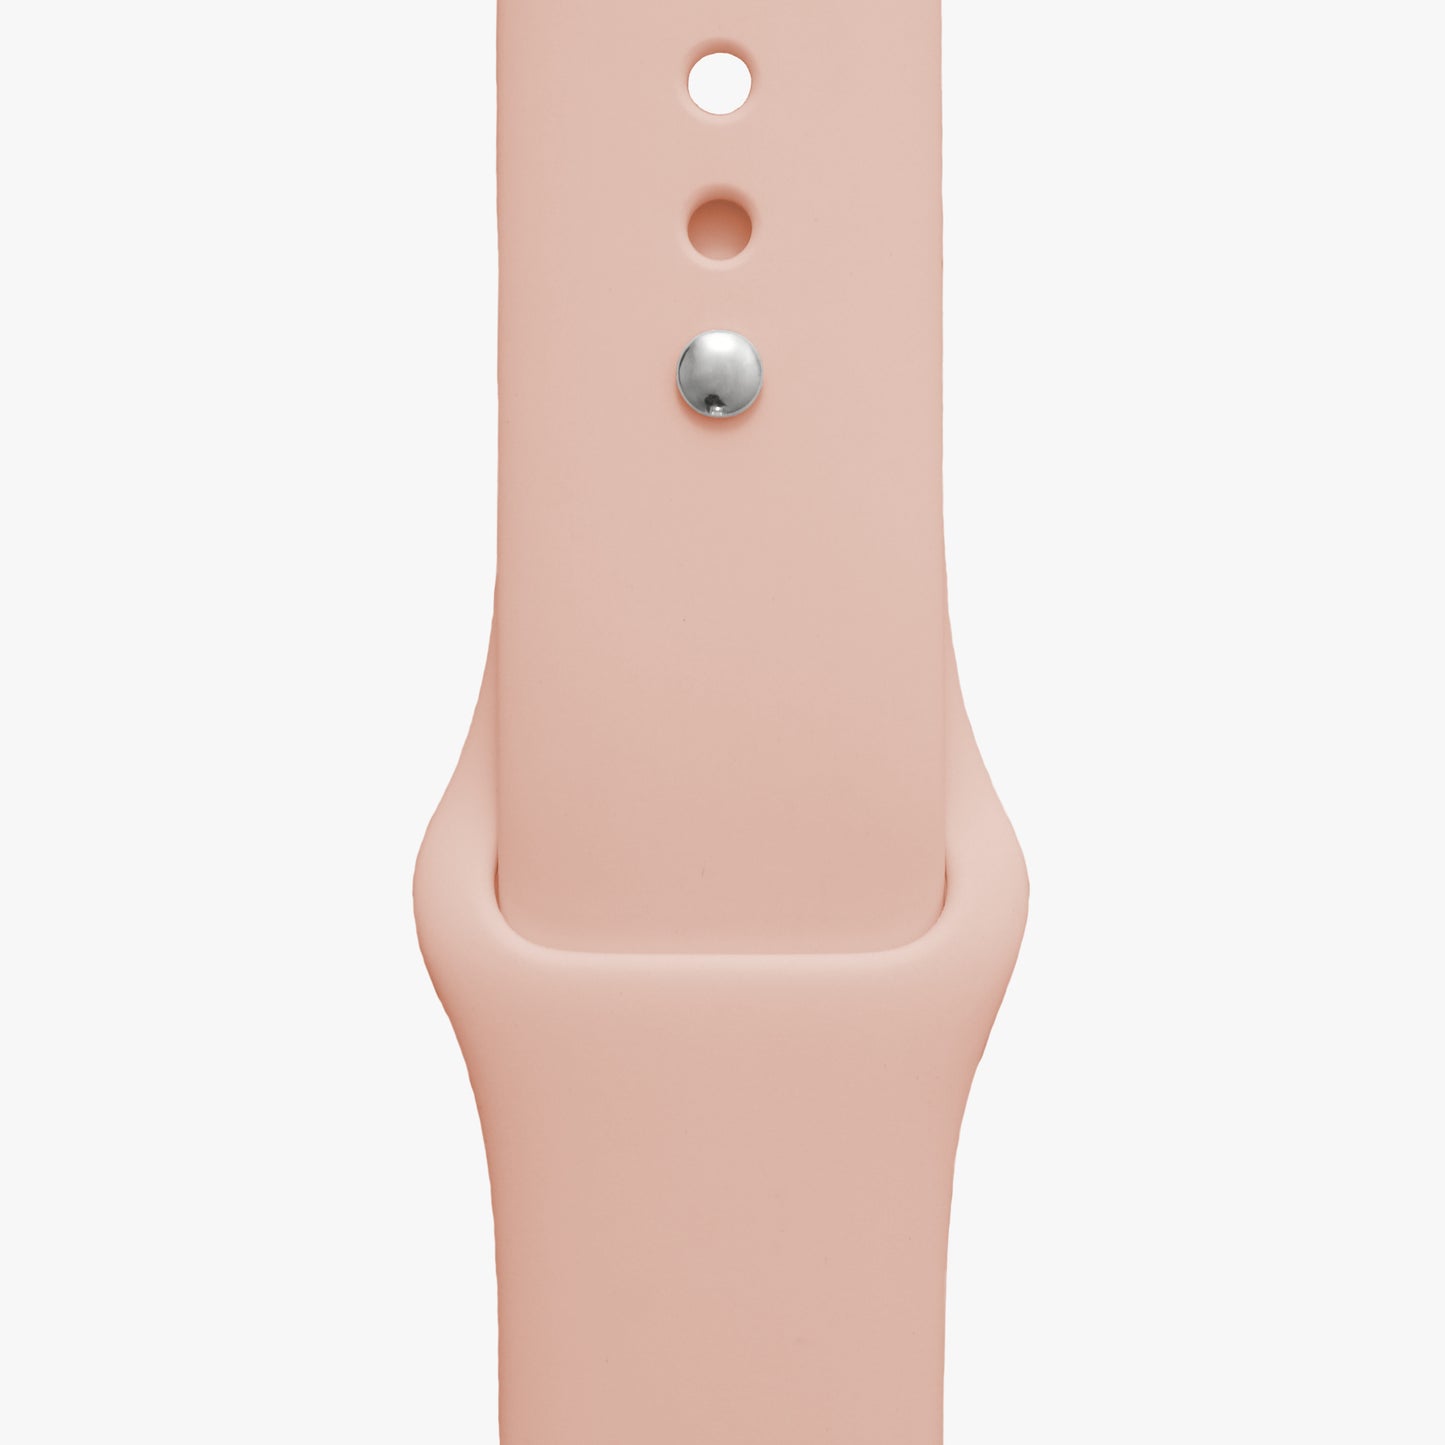 Sportarmband für Apple Watch - 2 Größen in S/M + M/L - Farbe pfirsich